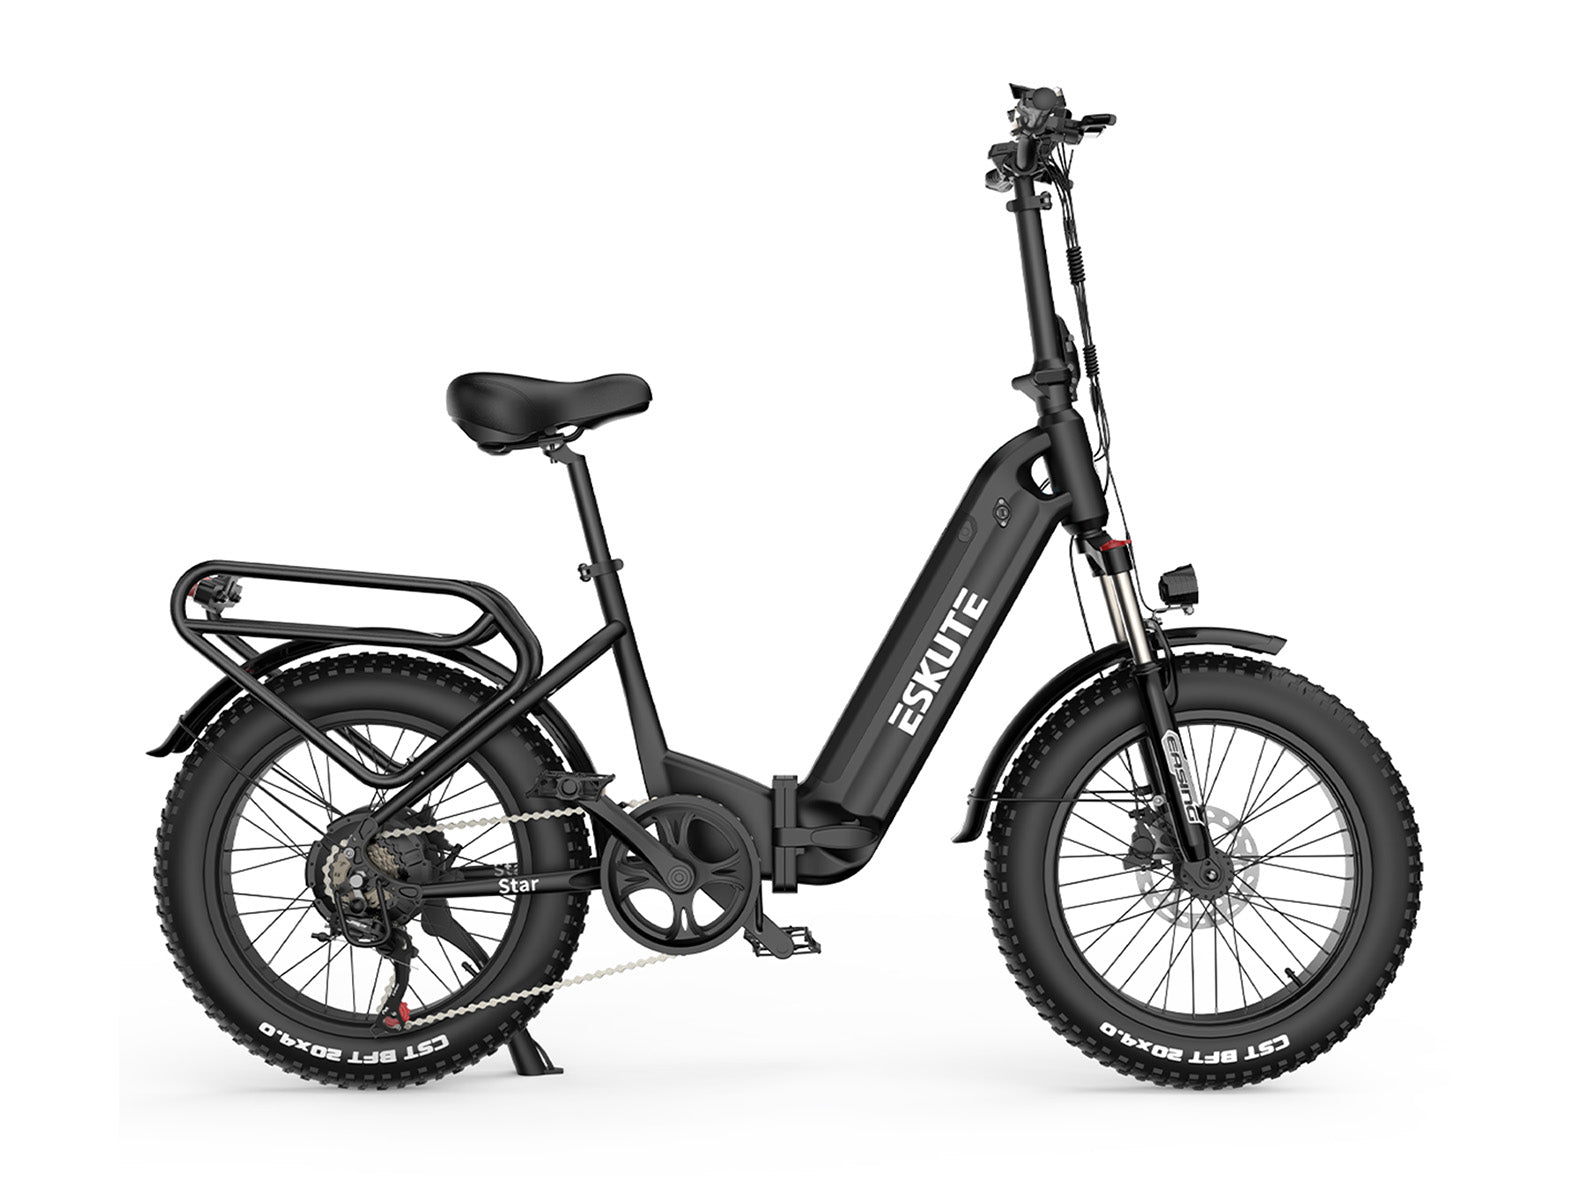 [Clearance] Eskute Star 20“ x 4.0”  Foldable Electric Bike